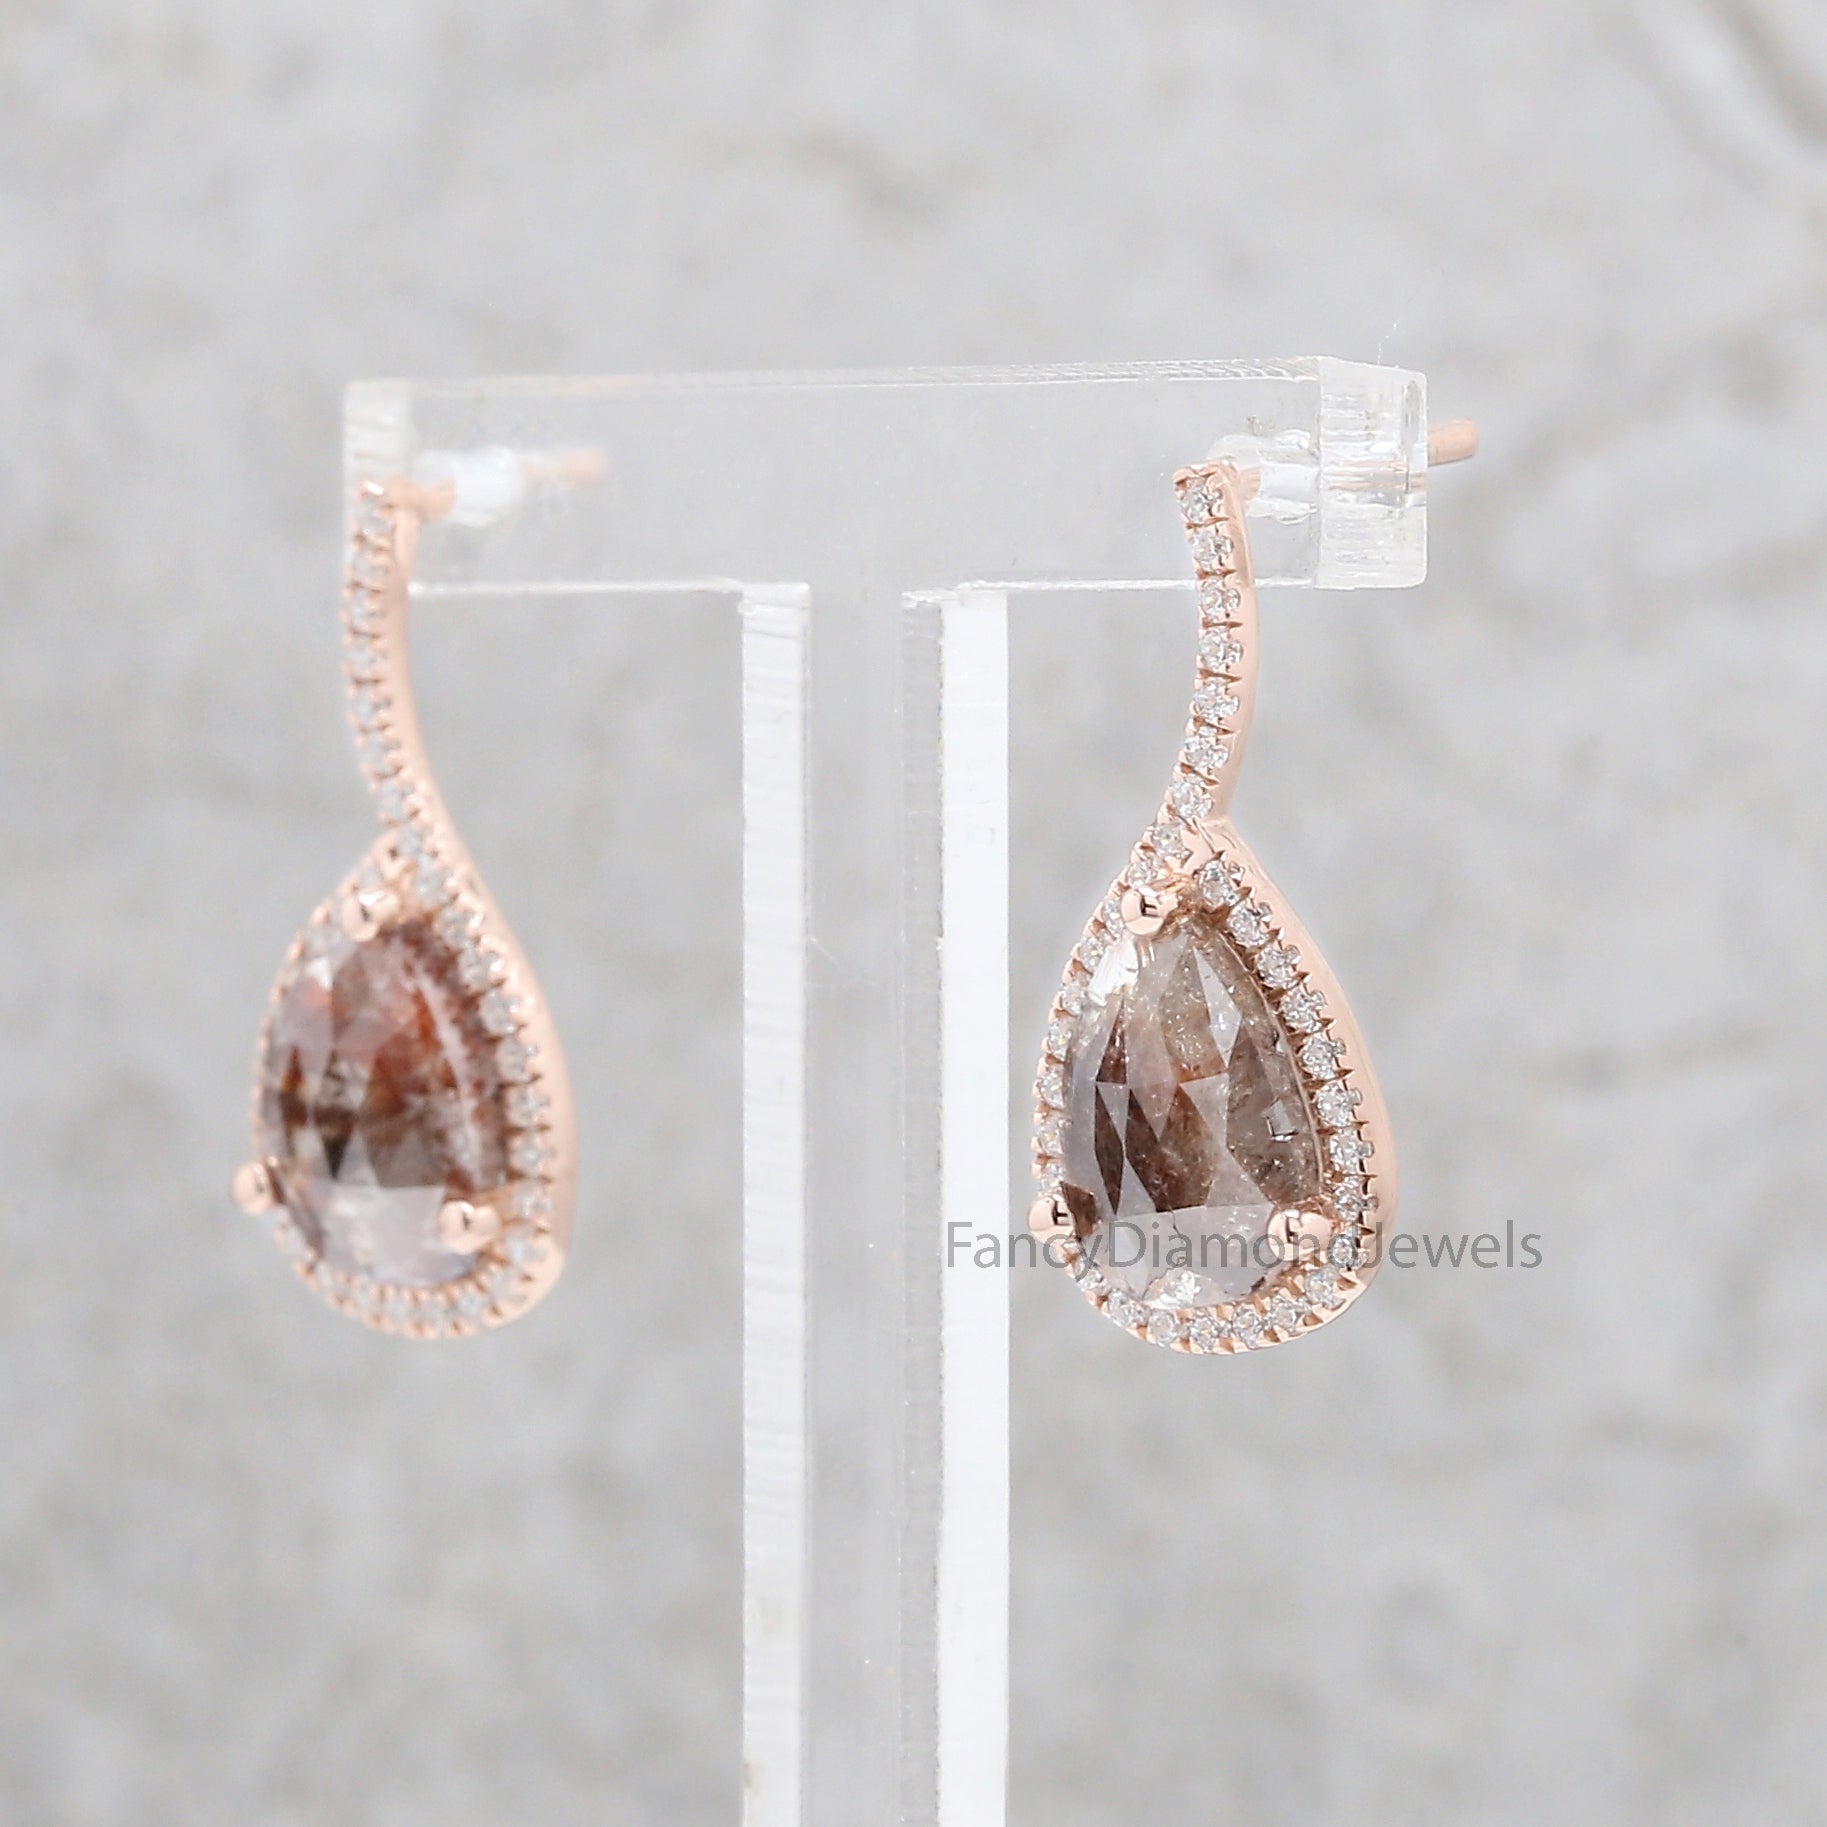 Pear Diamond Earring, Brown Color Pear Shape Earring, Halo Earring, Pear Engagement Earring, Earlobe Earrings, Stud Earrings KDN8217